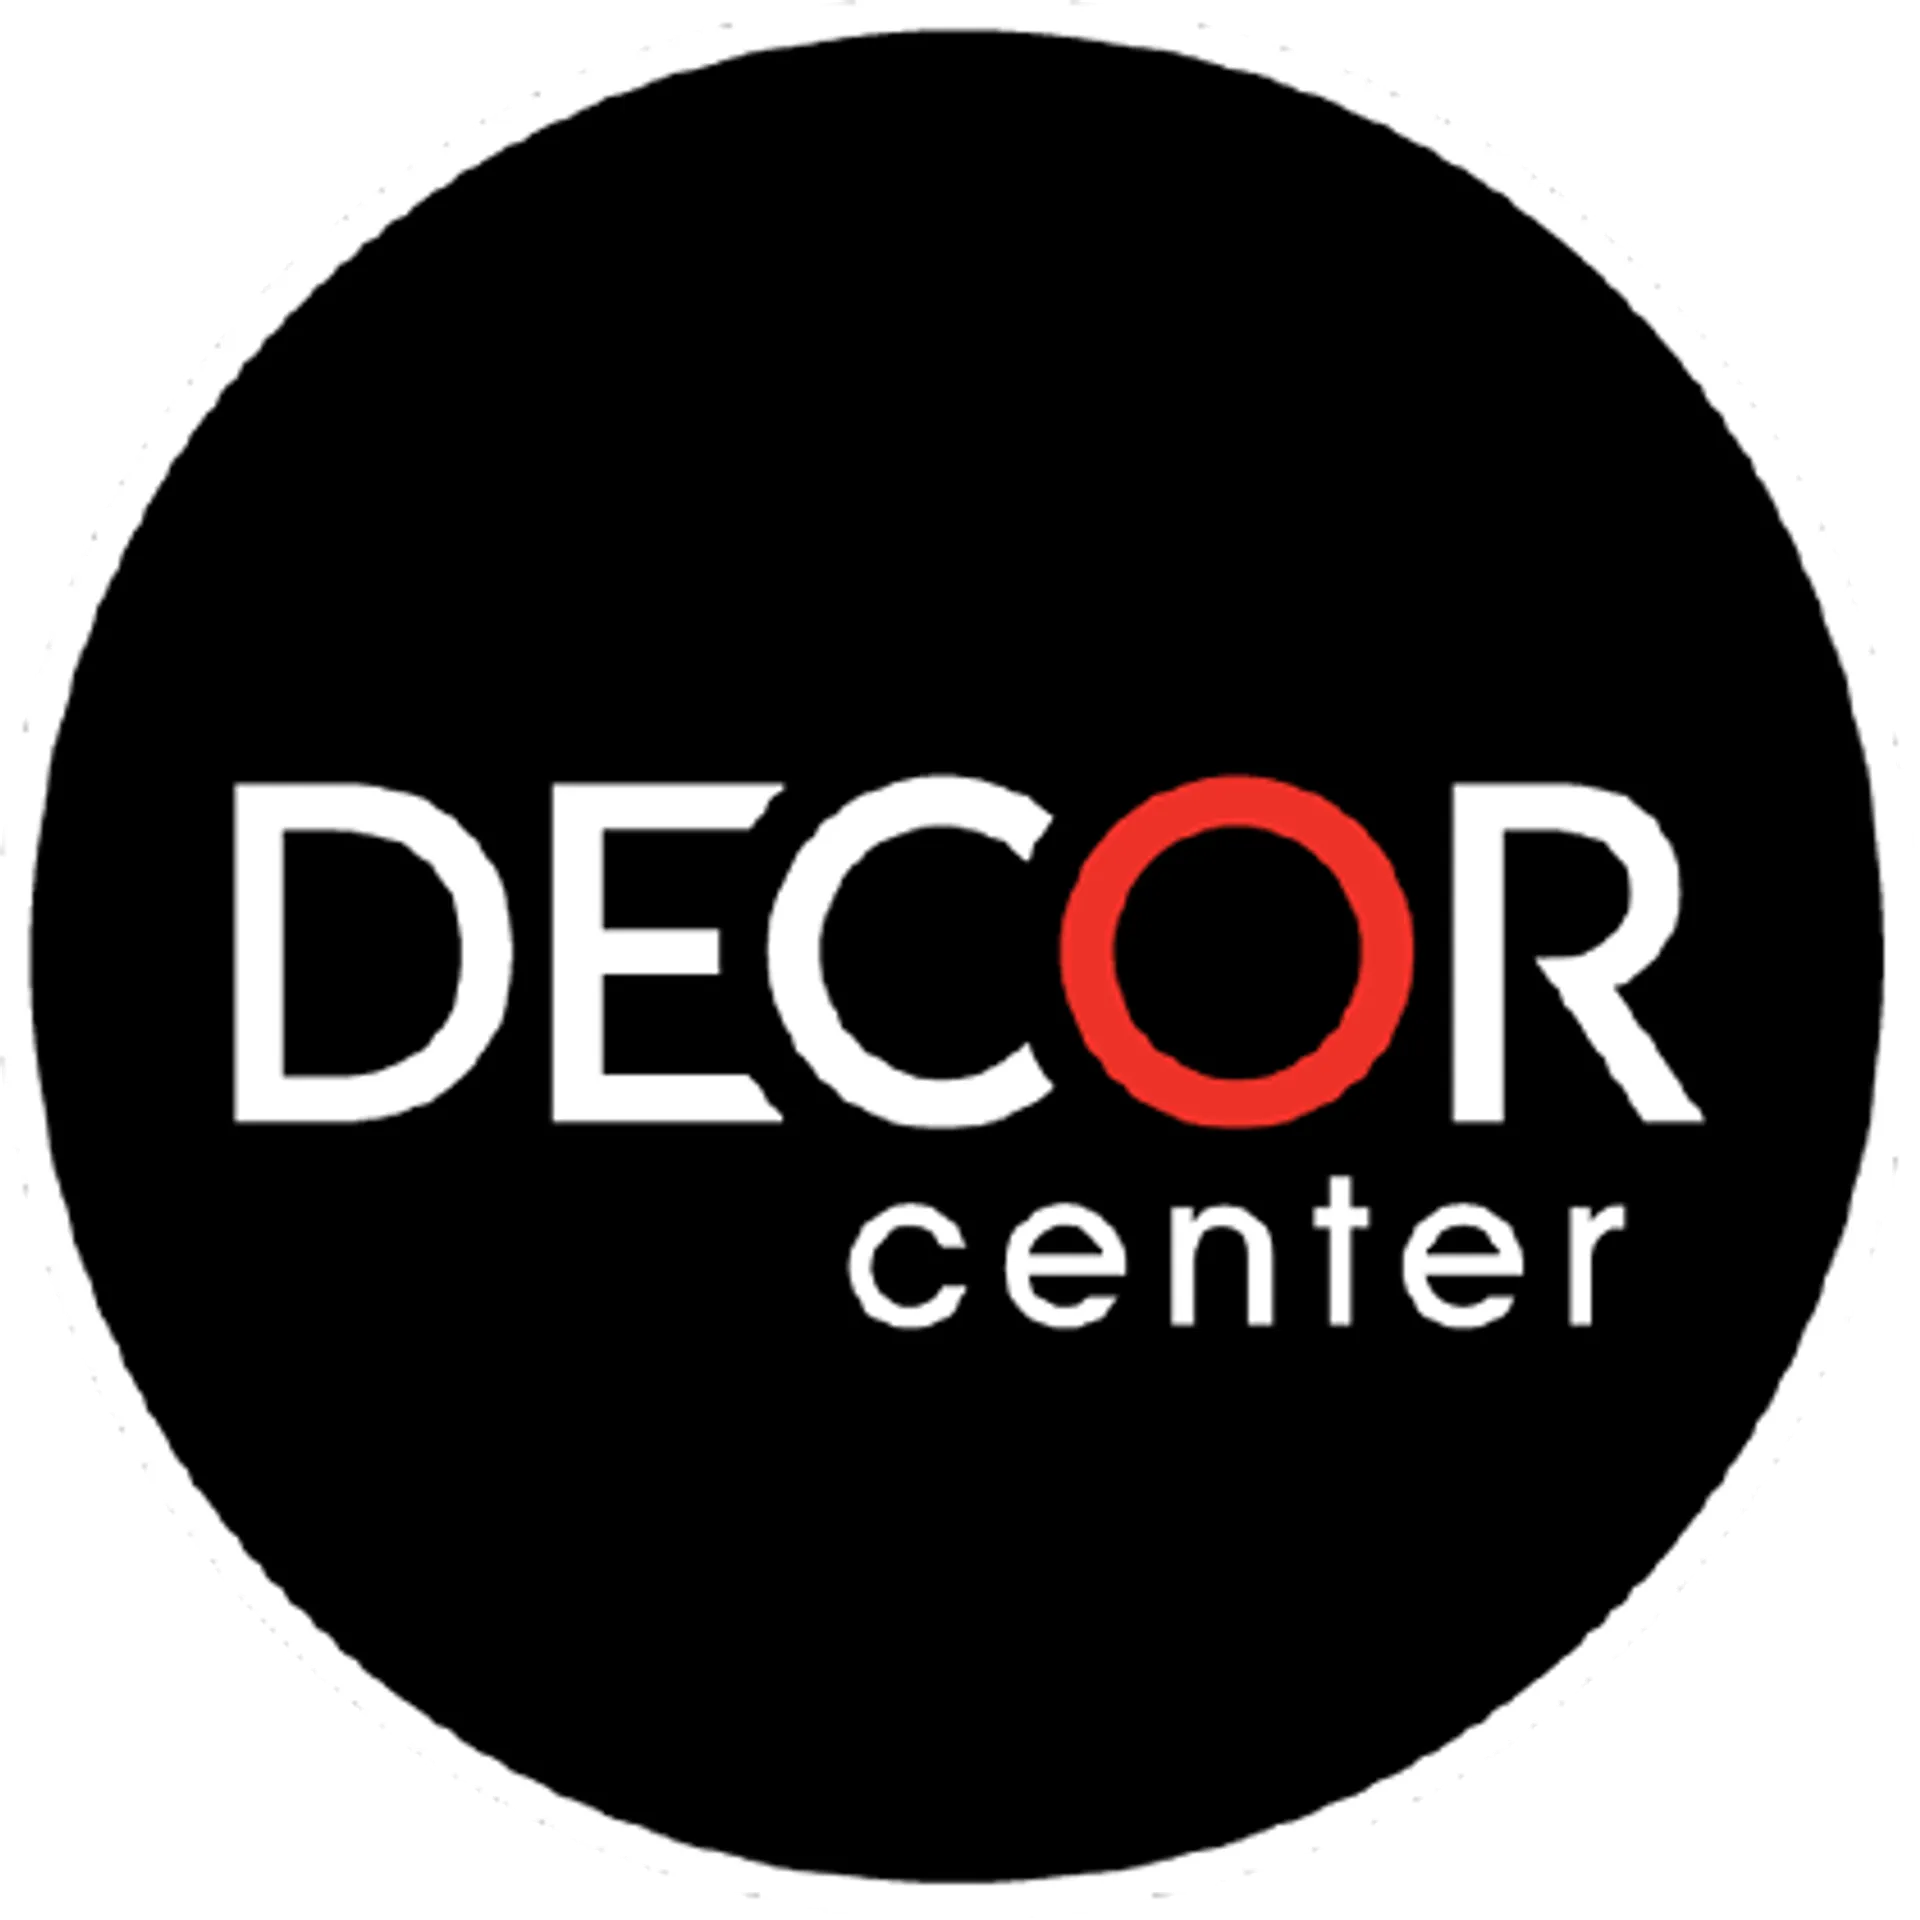 DECOR CENTER logo